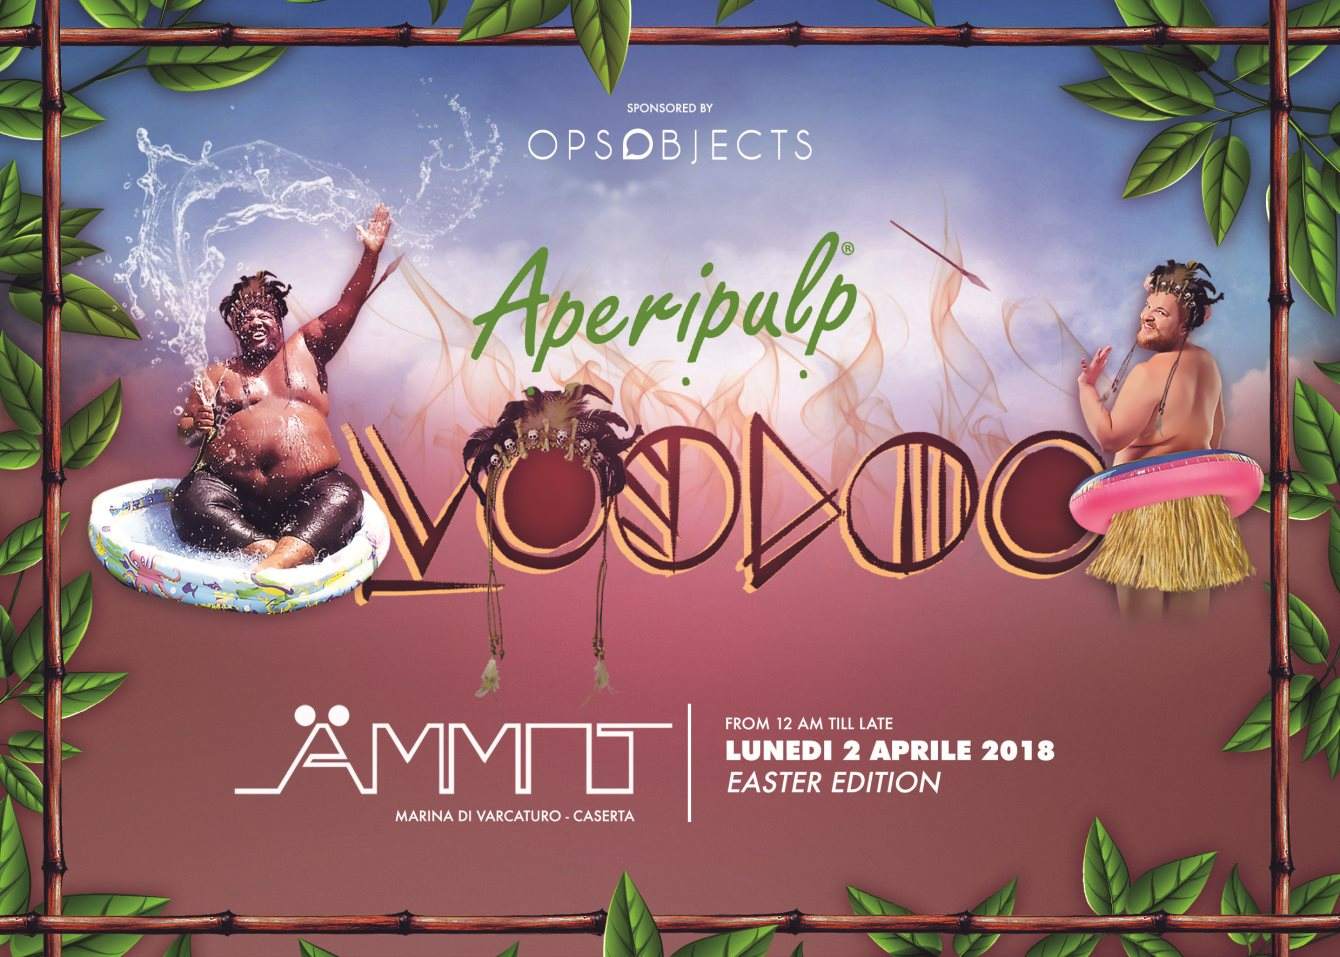 Aperipulp 'Voodoo' - Easter Edition 2018 with Adam Port-Keinemusik - Página frontal